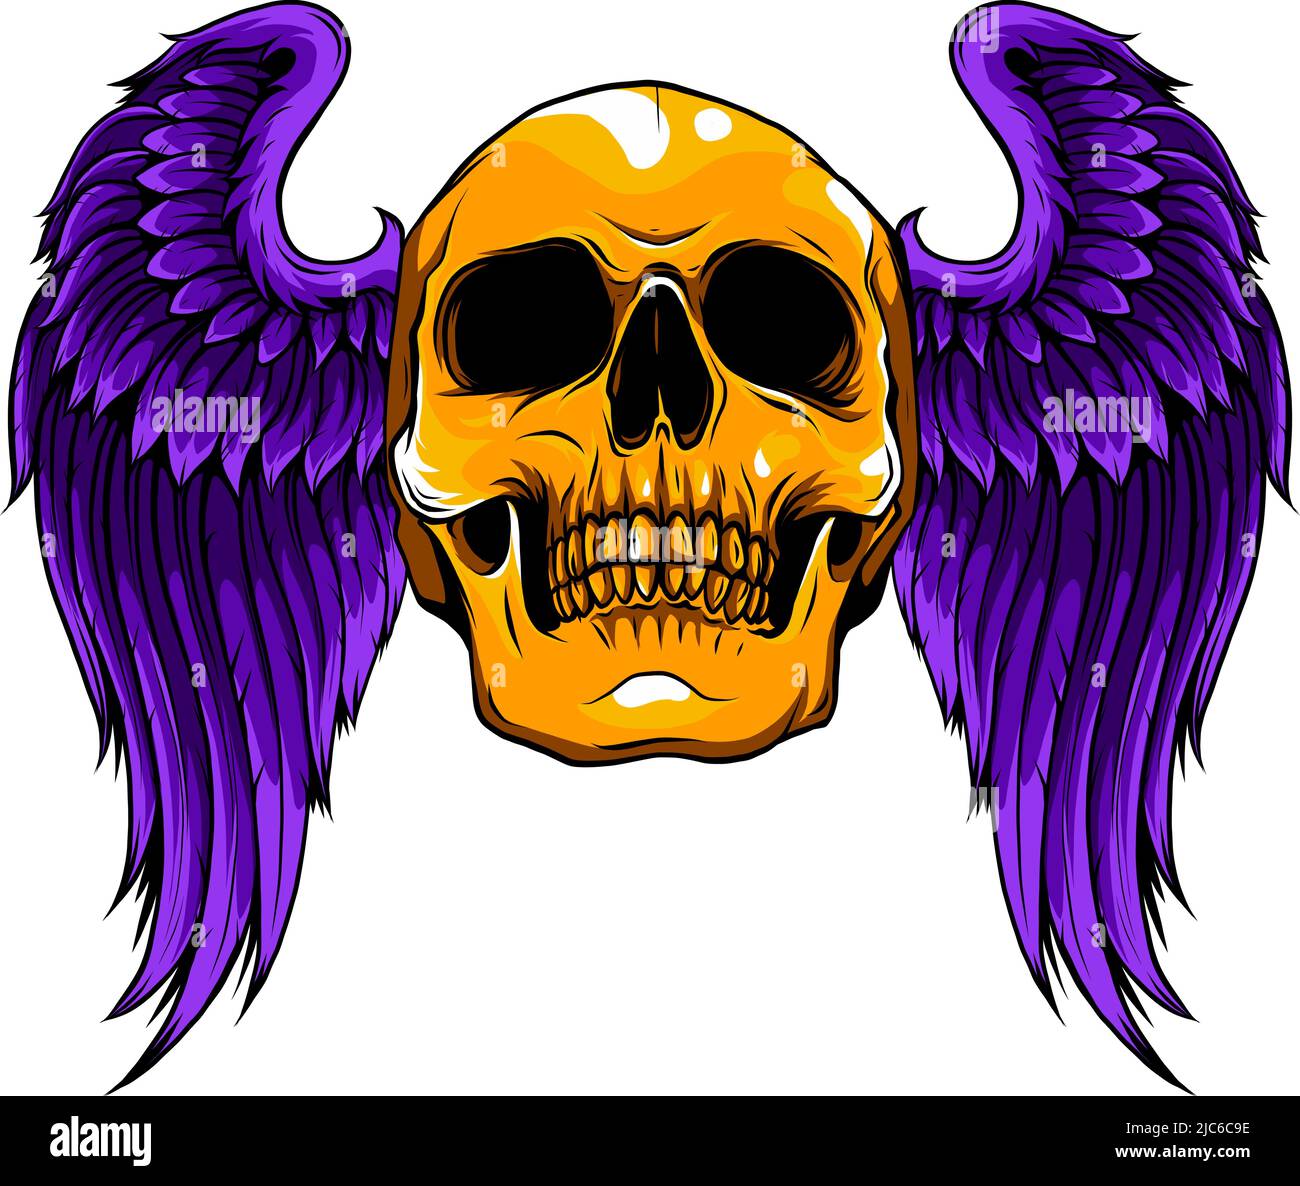 Les ailes d'ange courtes avec le crâne humain mort unique de l'illustration Illustration de Vecteur